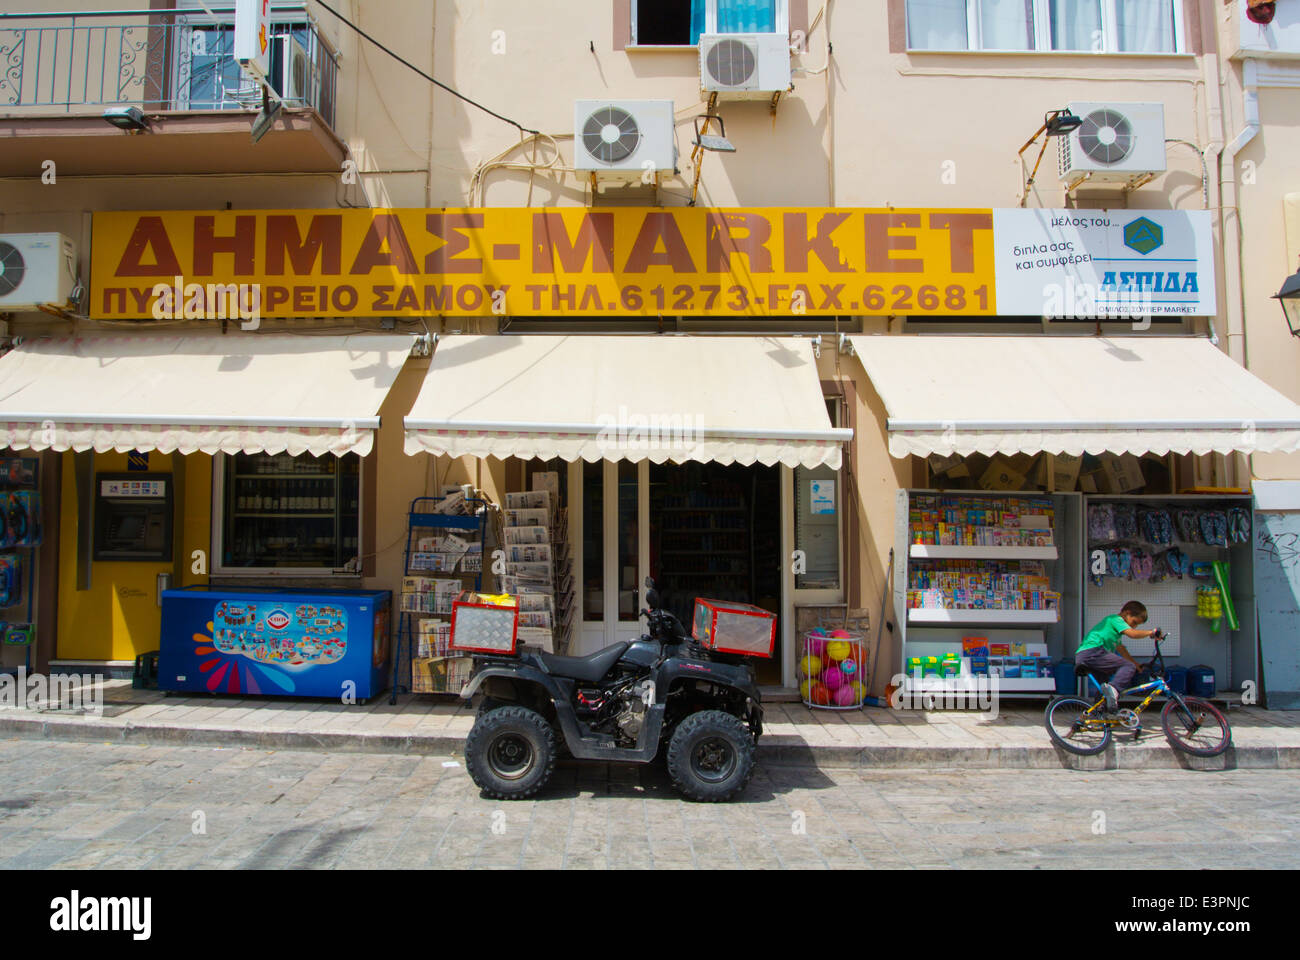 Delivery quadbike outside a supermarket Logotheti street, Pythagoreio, Samos, Aegean Sea, Greece, Europe Stock Photo